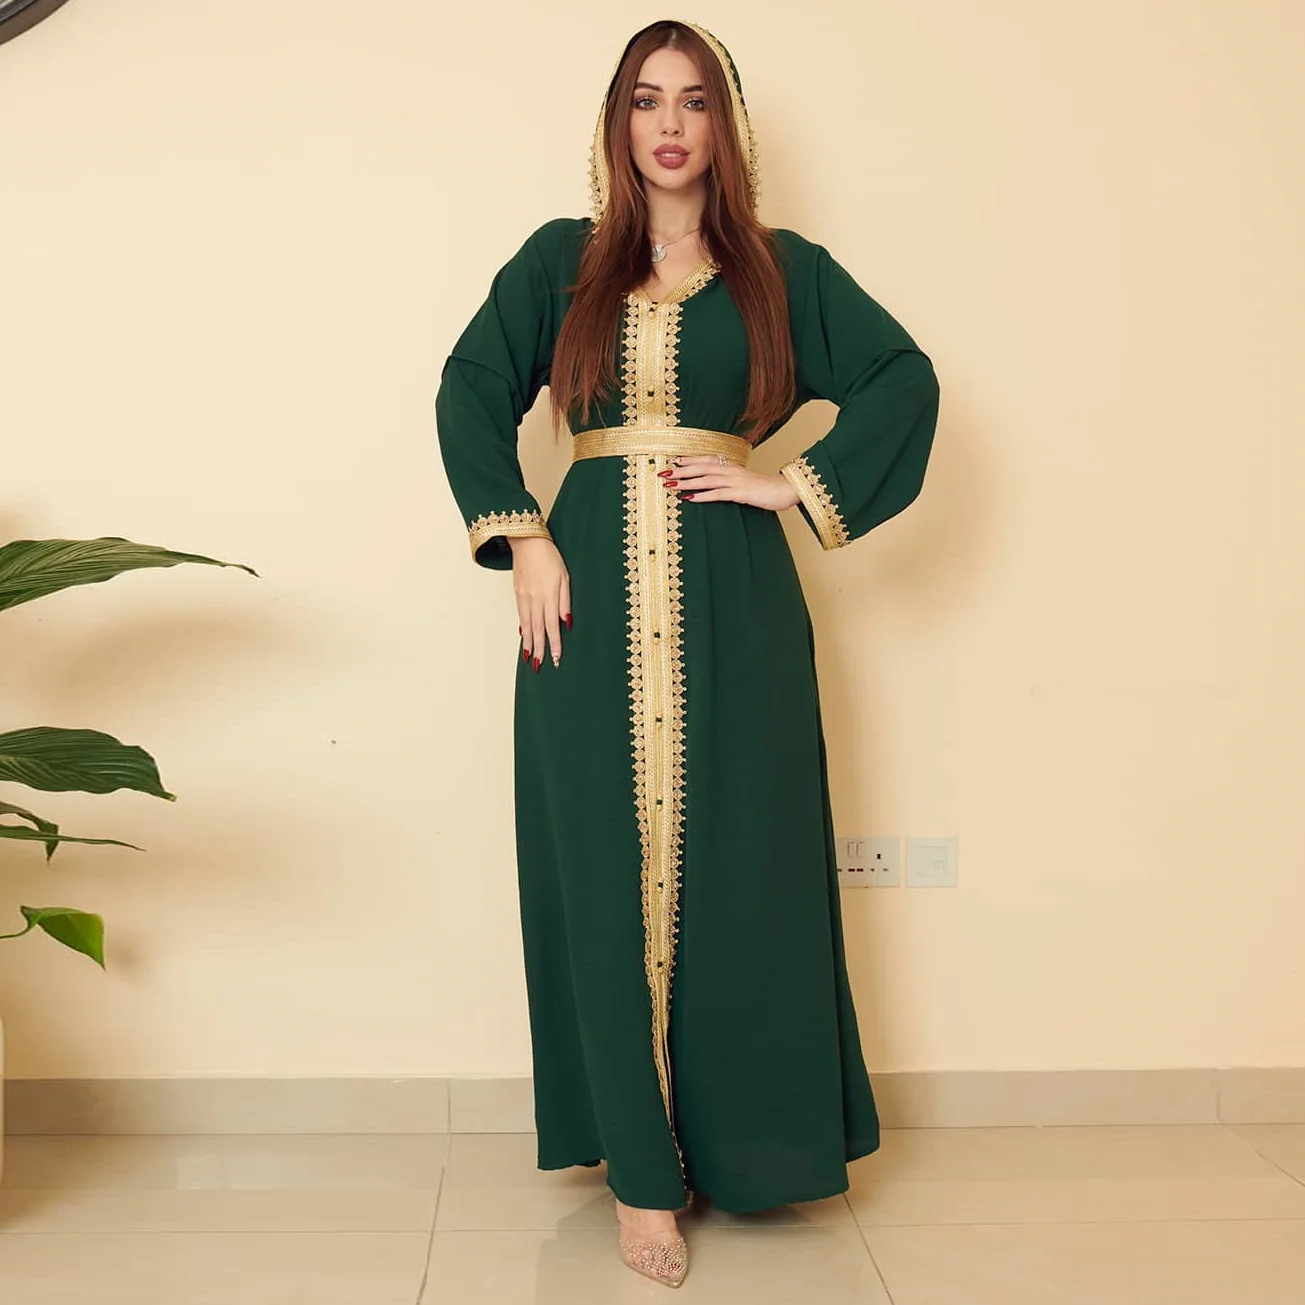 "Wepbel Eid Abaya мусульманское платье Iddle Восточное льняное зеленое Женская одежда с капюшоном Abaya платье большое свободное платье"